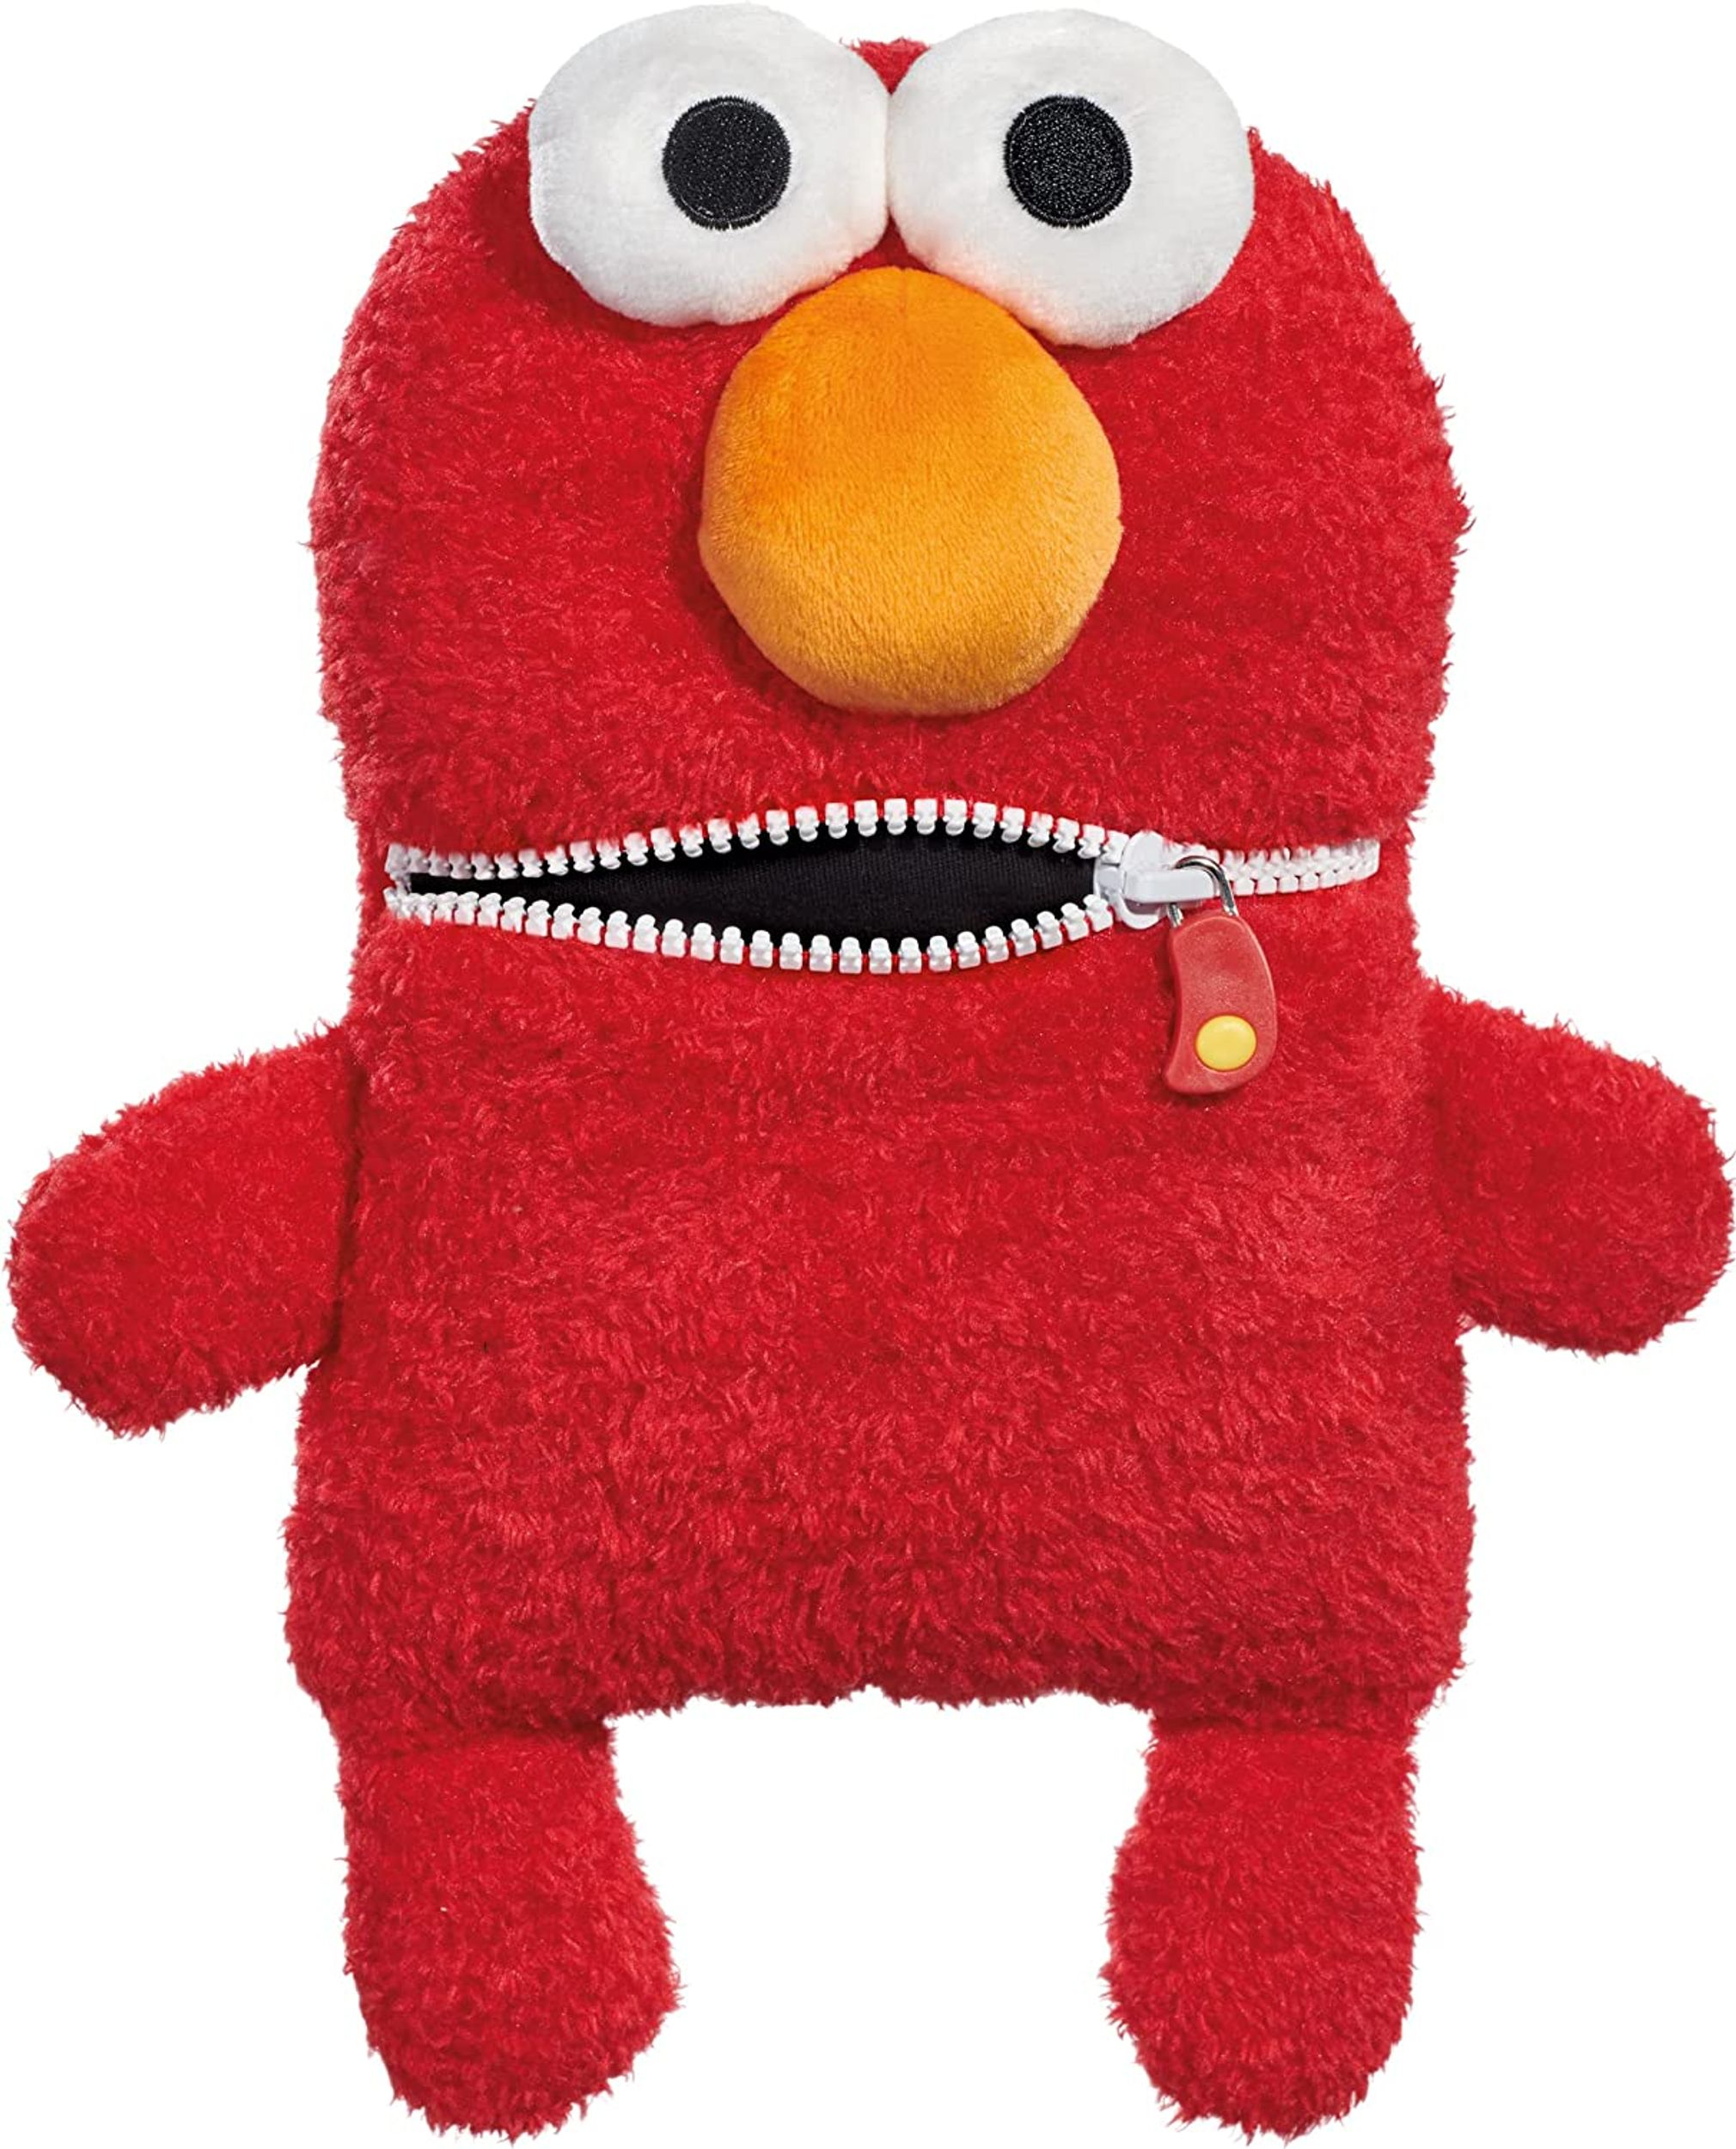 Sorgenfresser SCHMIDT Elmo Sesamstrasse SPIELE Plüschfigur